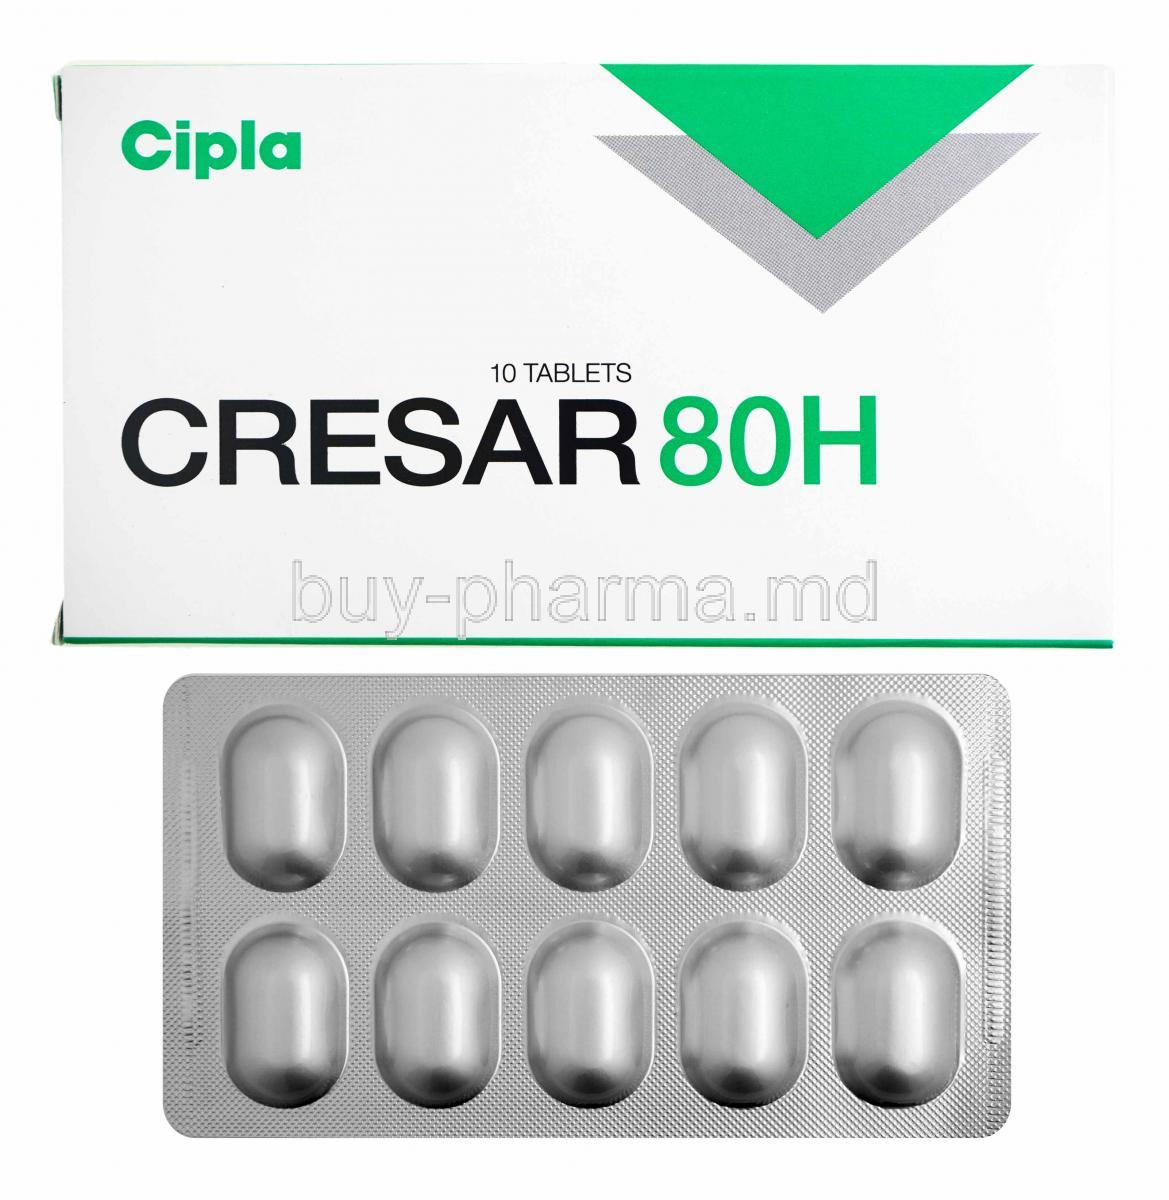 Cresar H, Telmisartan 80mg and Hydrochlorothiazide 12.5mg box and tablets